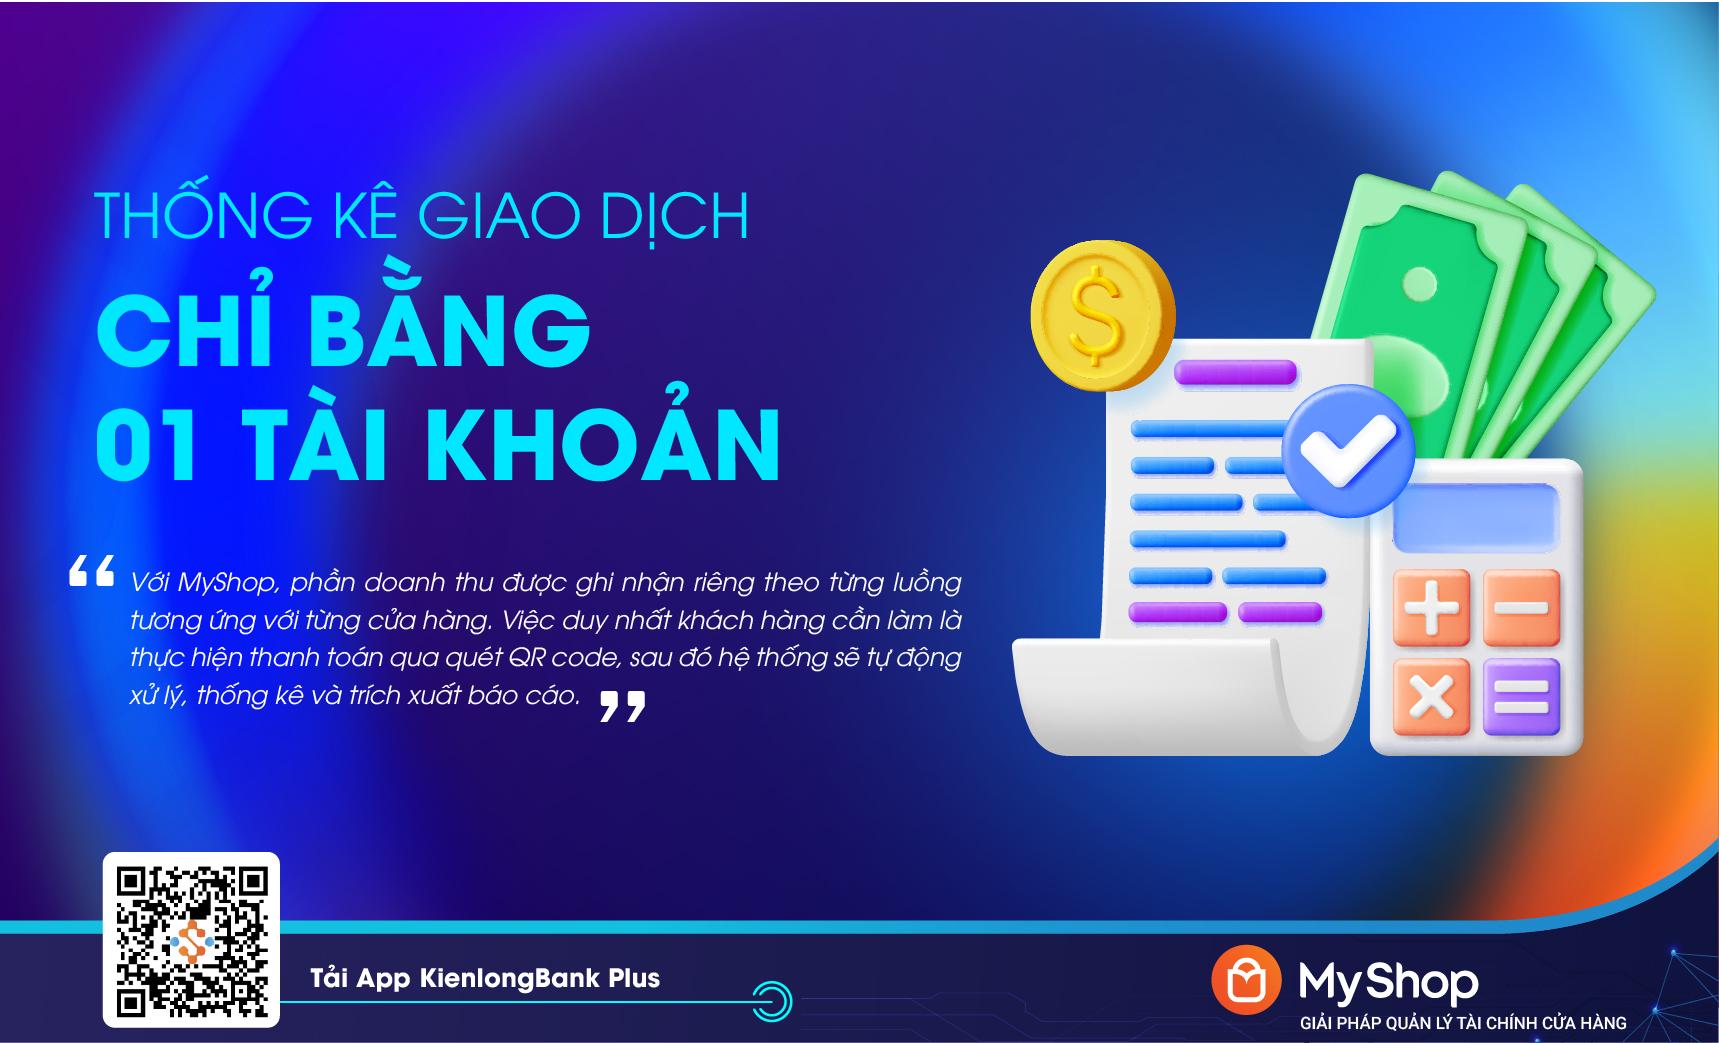 KienlongBank ra mắt MyShop: Quản lý tài chính ưu việt cho chủ cửa hàng bán lẻ - Ảnh 3.